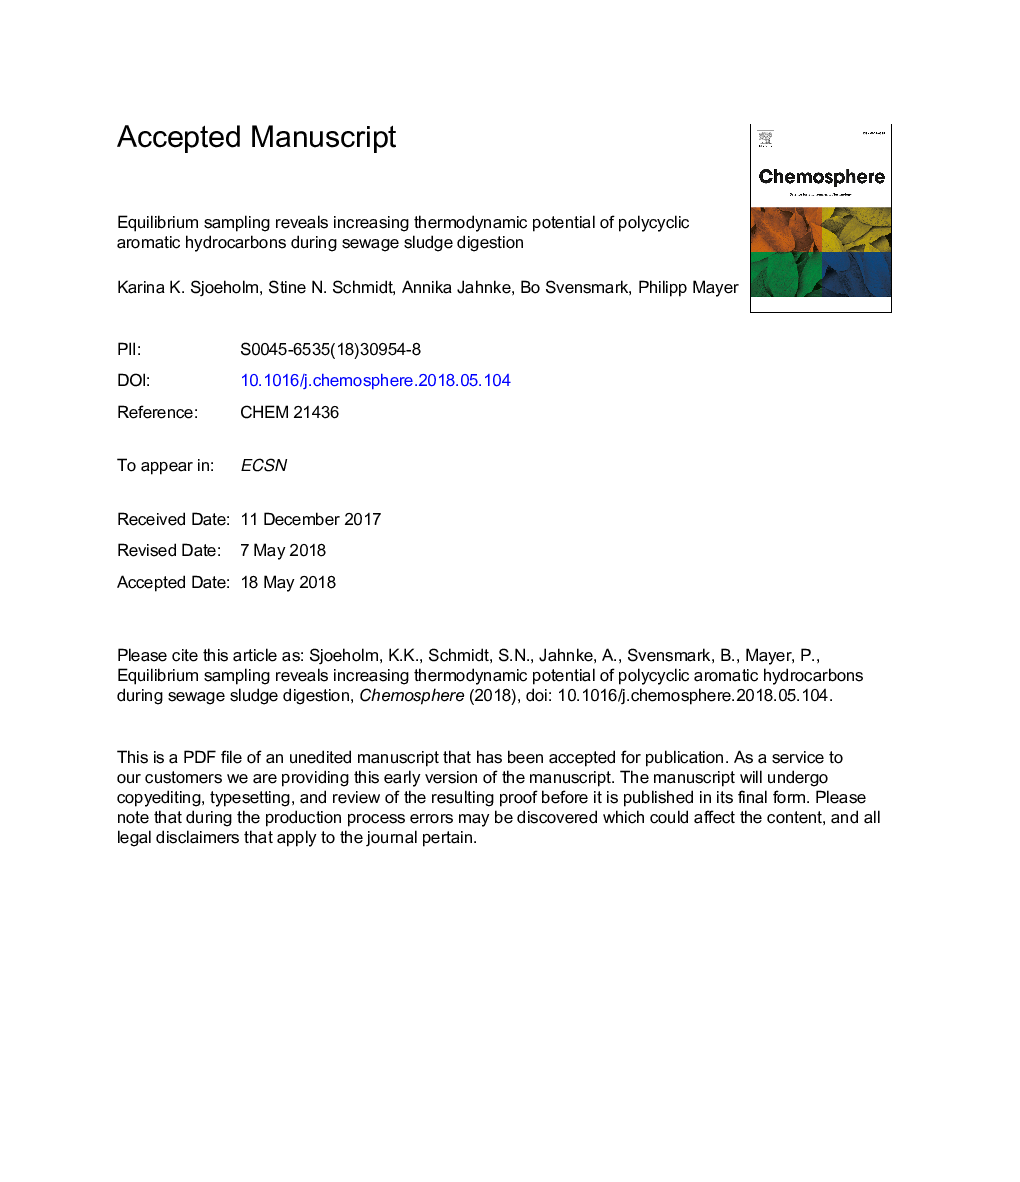 نمونه برداری از تعادل نشان دهنده افزایش پتانسیل ترمودینامیکی هیدروکربن های چند حلقه ای معطر در طی هضم لجن فاضلاب 